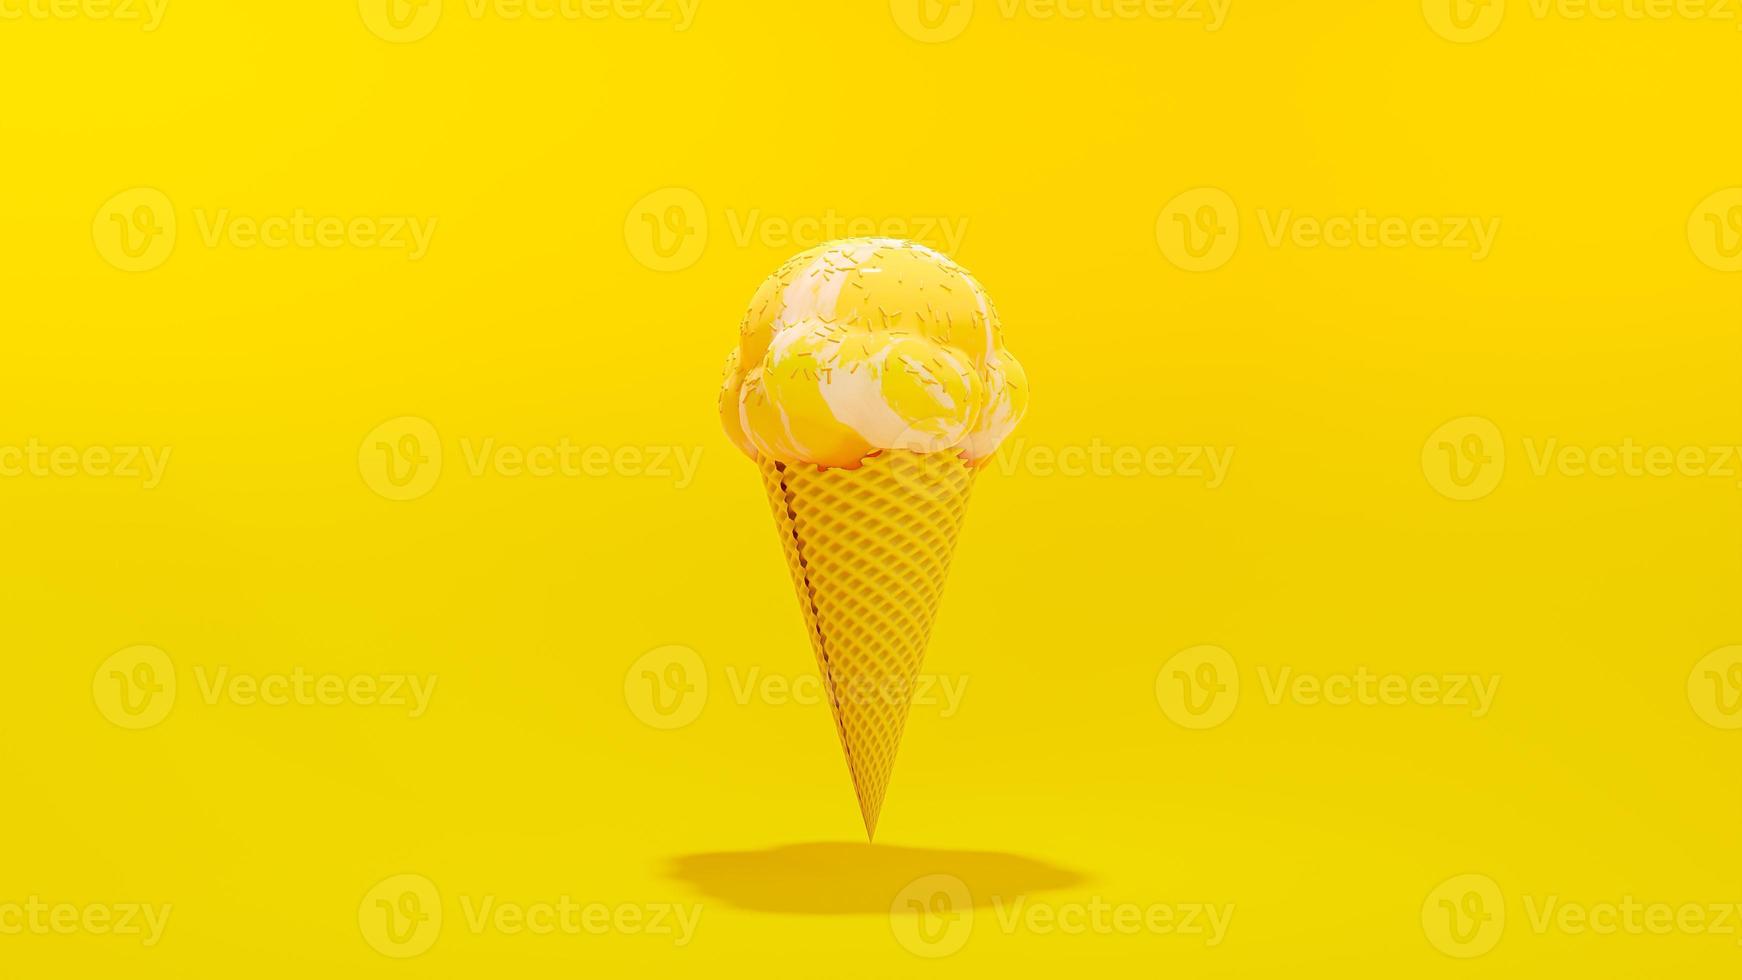 cornet de crème glacée jaune sur fond jaune. concept d'idée minimale. photo